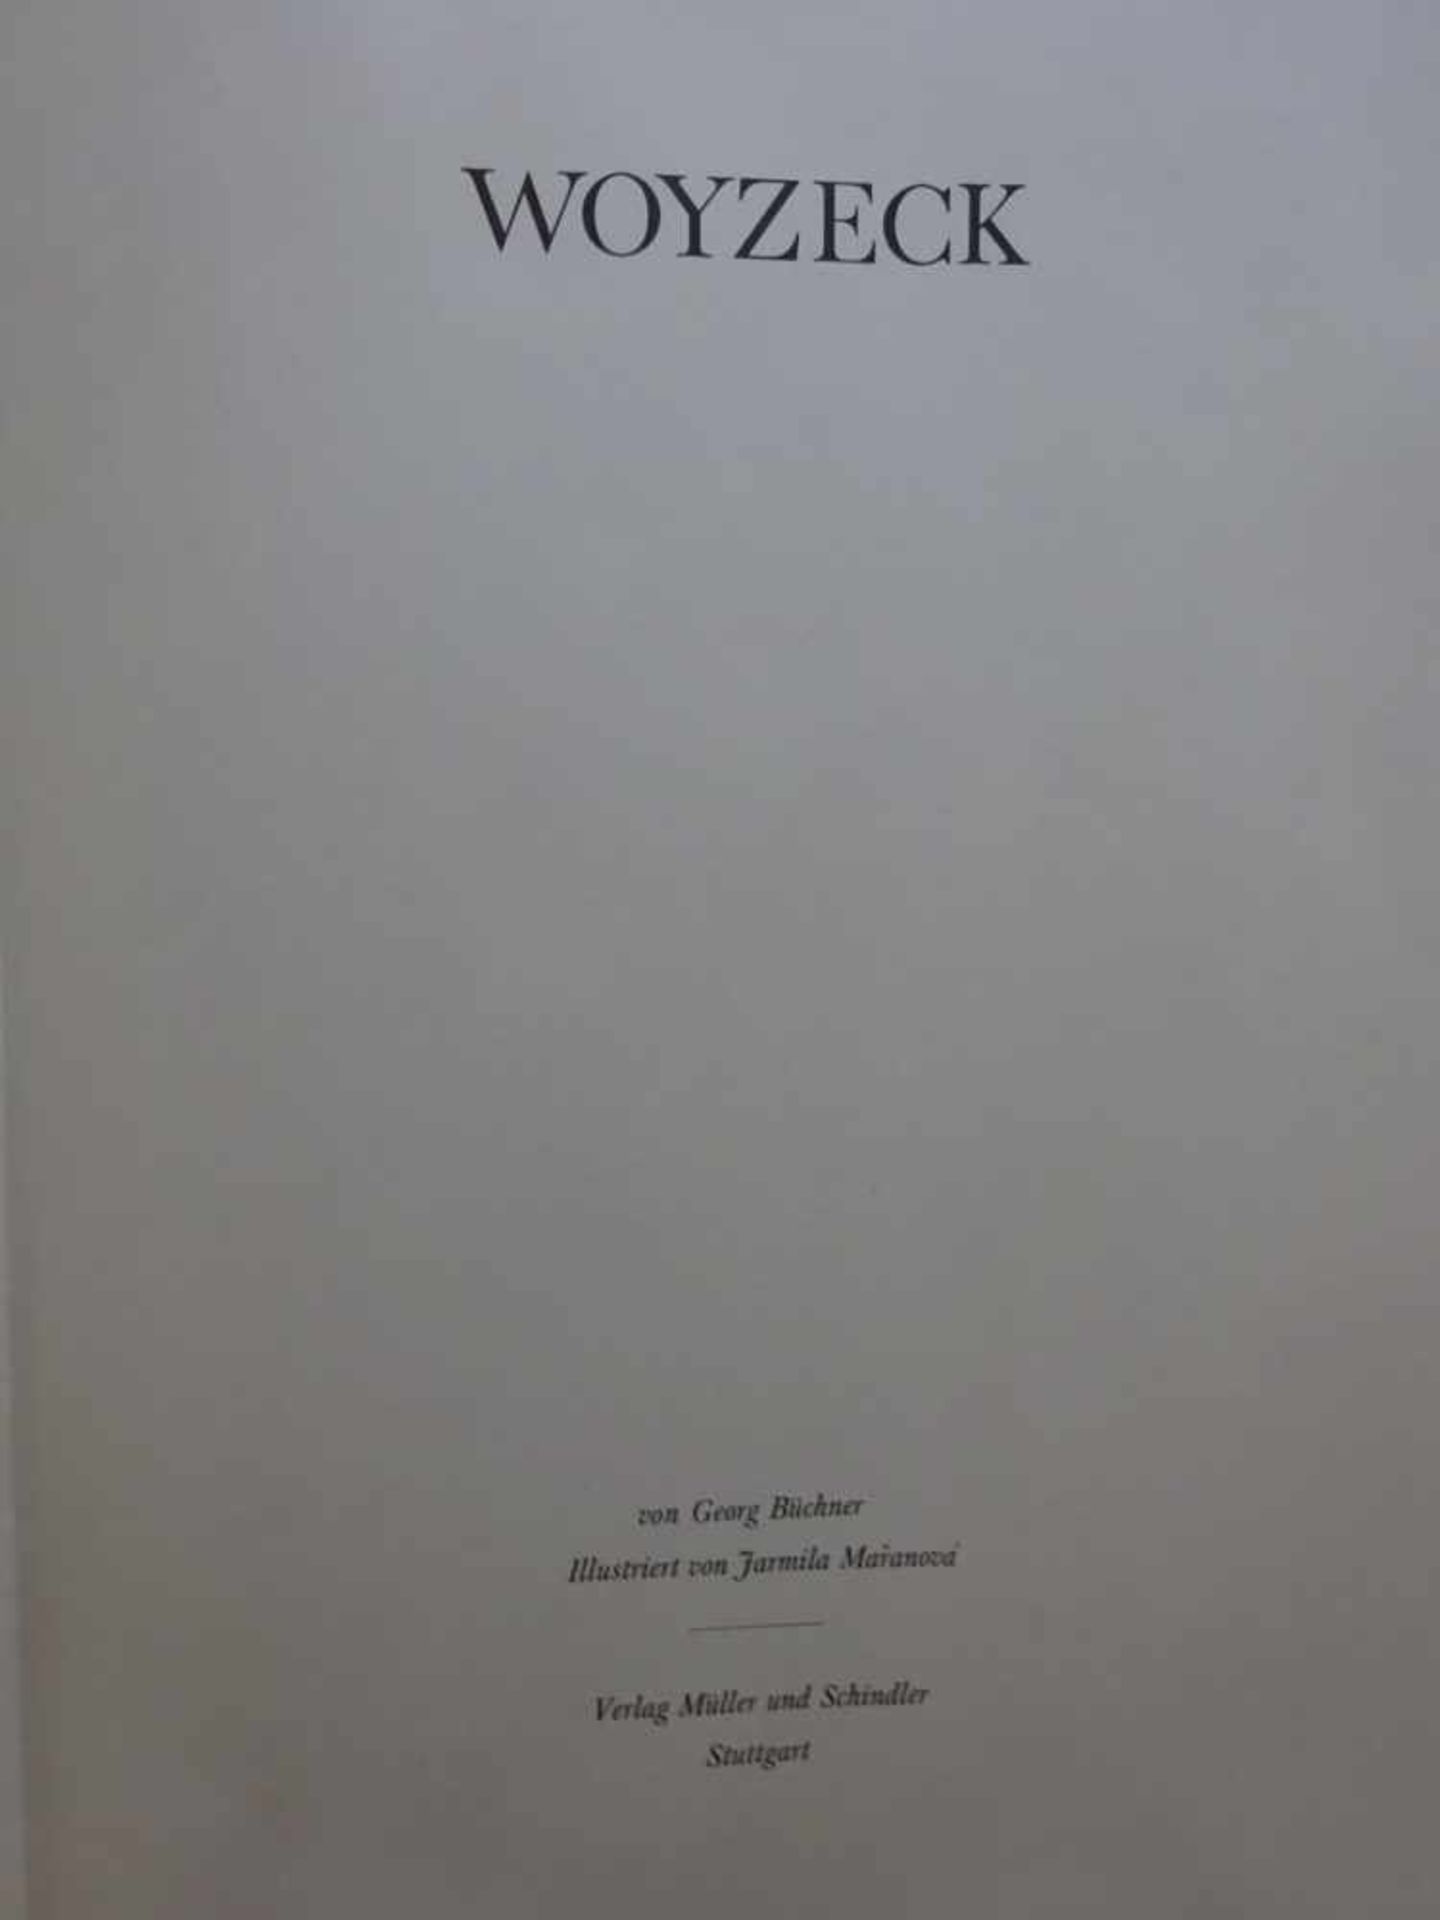 Pressendrucke.- Büchner, G.Woyzeck. Illustriert von Jarmila Maranová. Stuttgart, Müller u. - Bild 3 aus 7